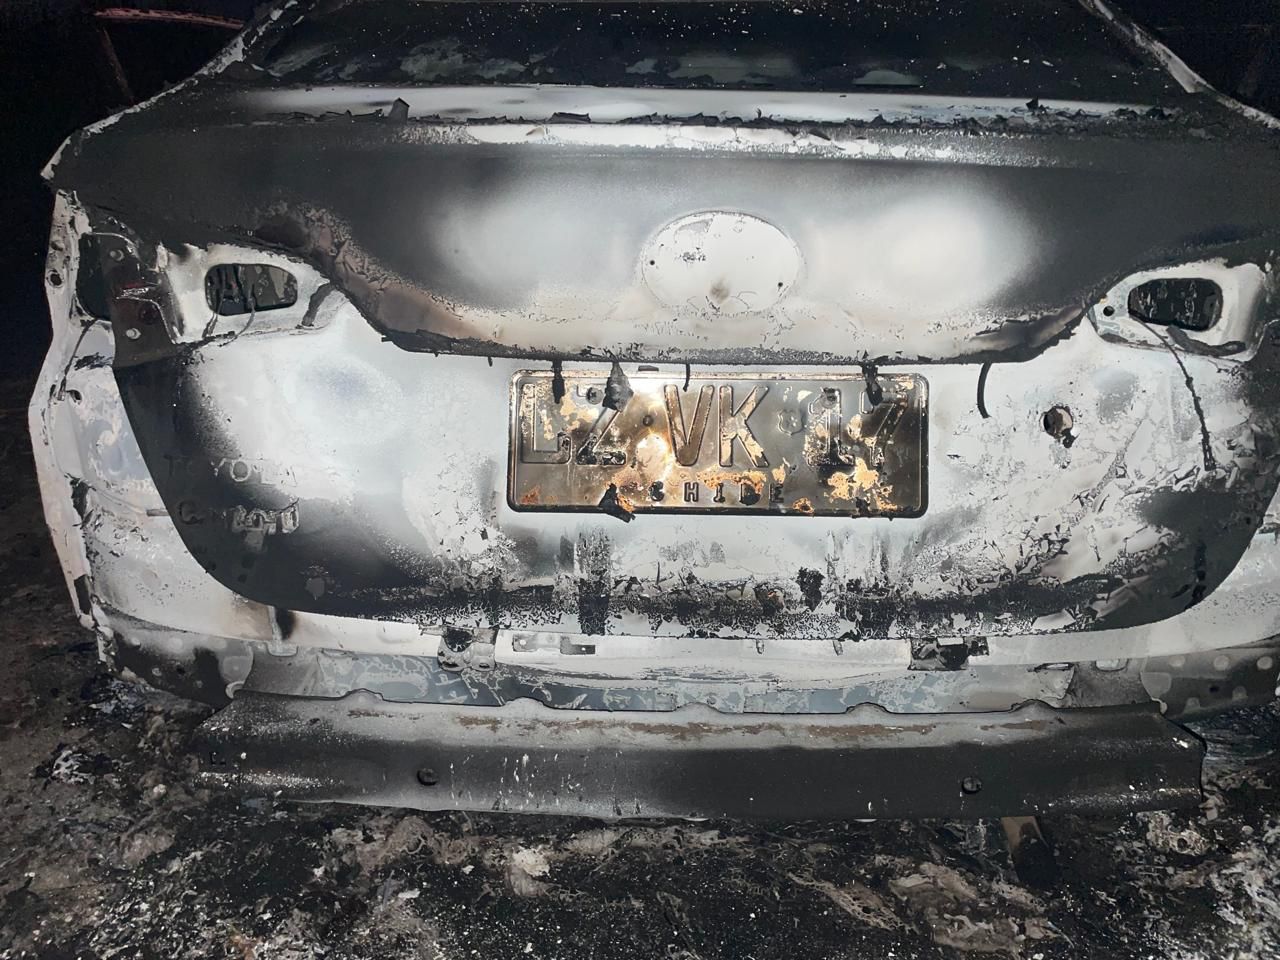 En Quillota asaltaron a chofer y le robaron colectivo vehículo apareció quemado